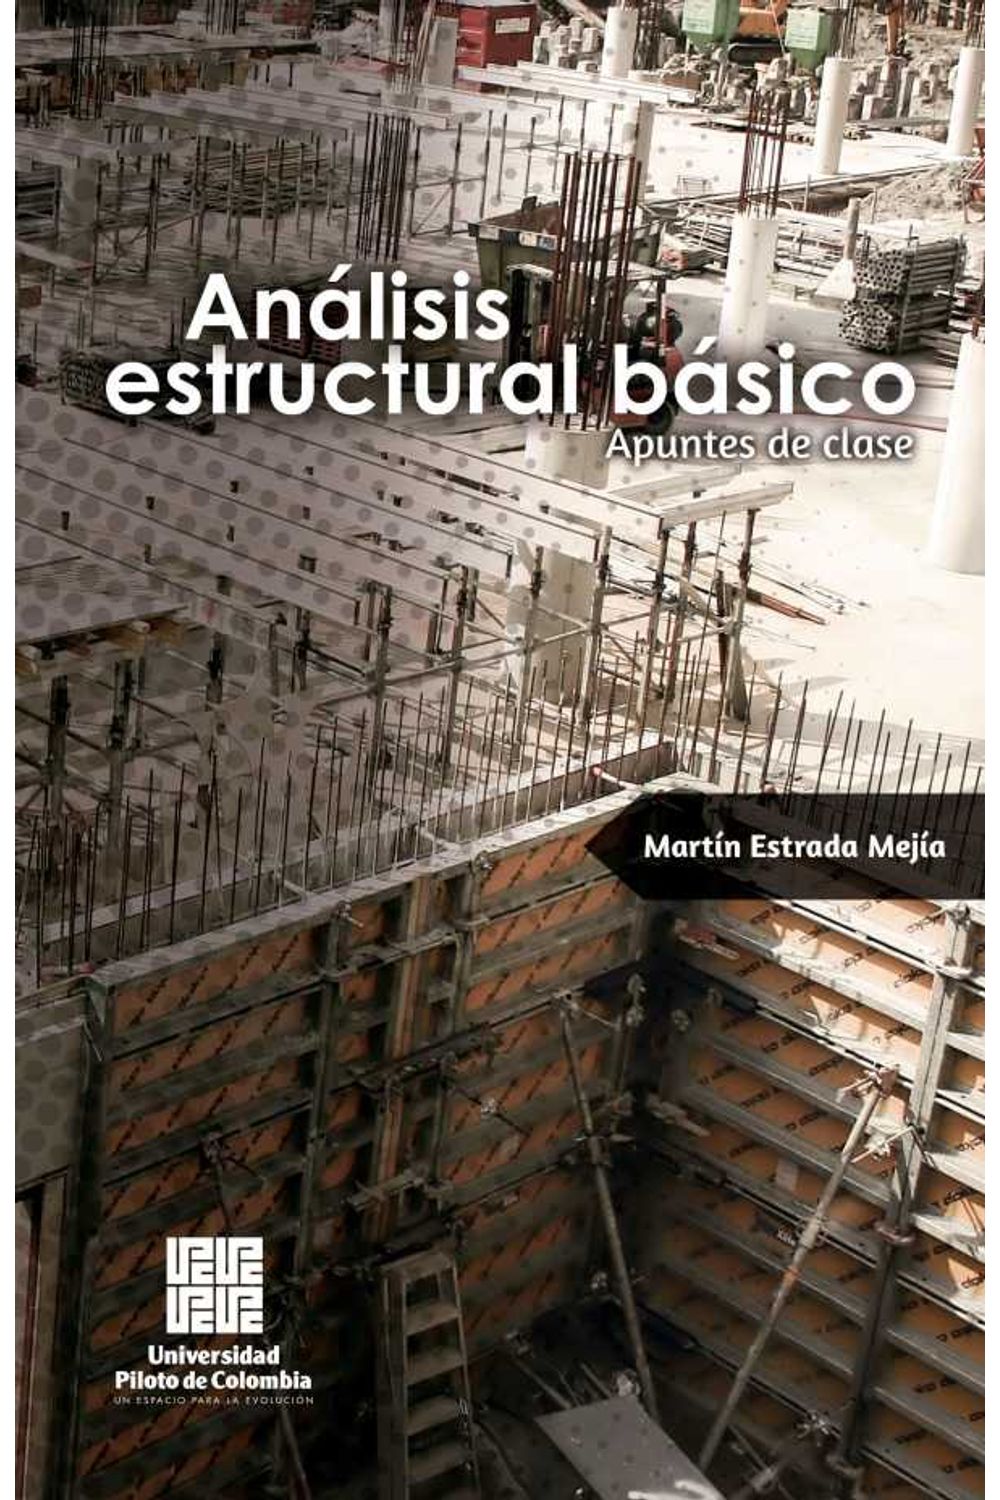 bw-anaacutelisis-estructural-baacutesico-universidad-piloto-de-colombia-9789588957586